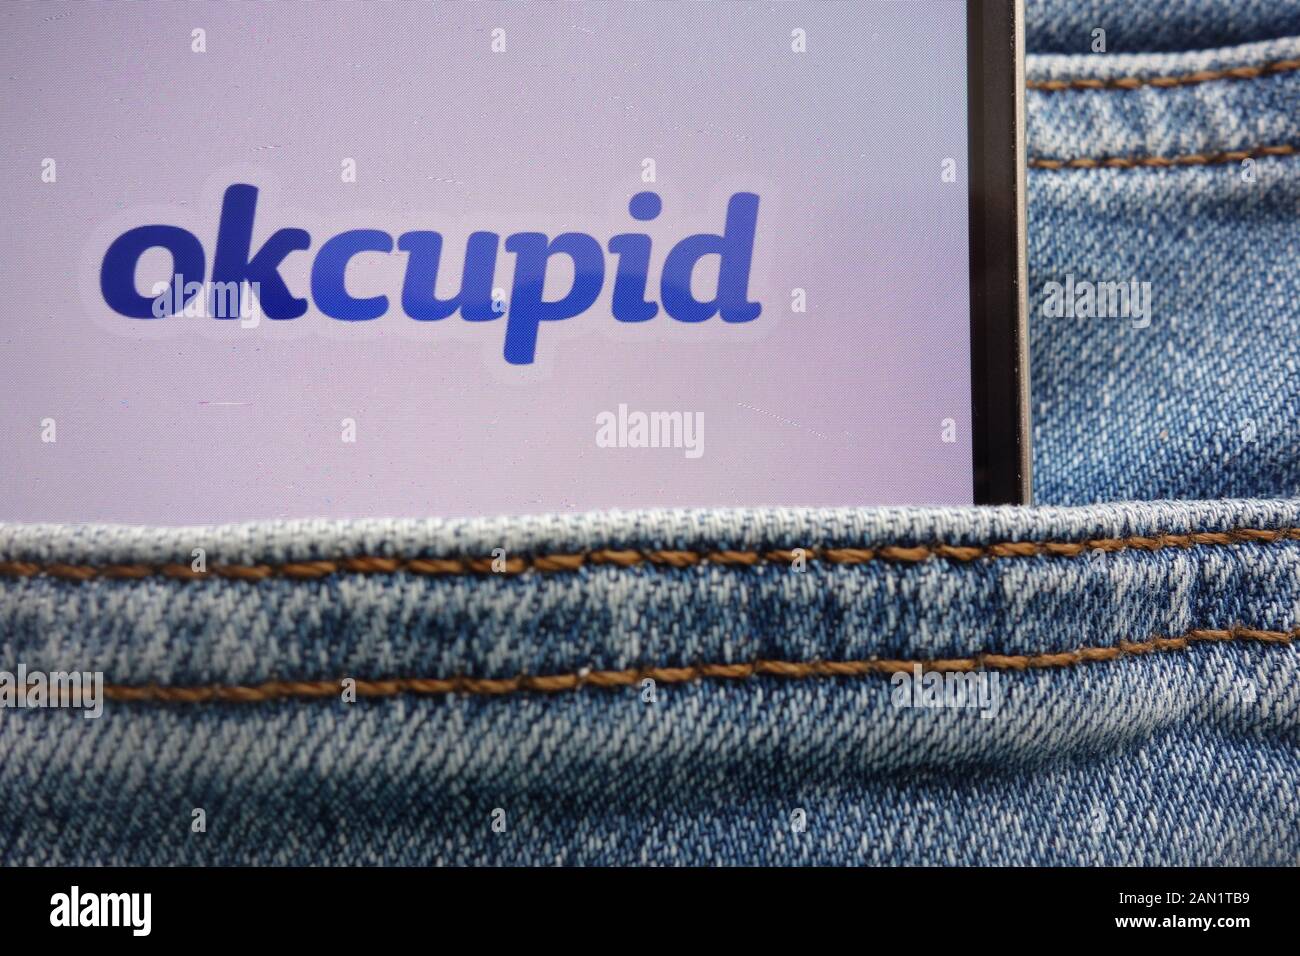 Okcupid logo affiché sur smartphone caché dans la poche de jeans Banque D'Images